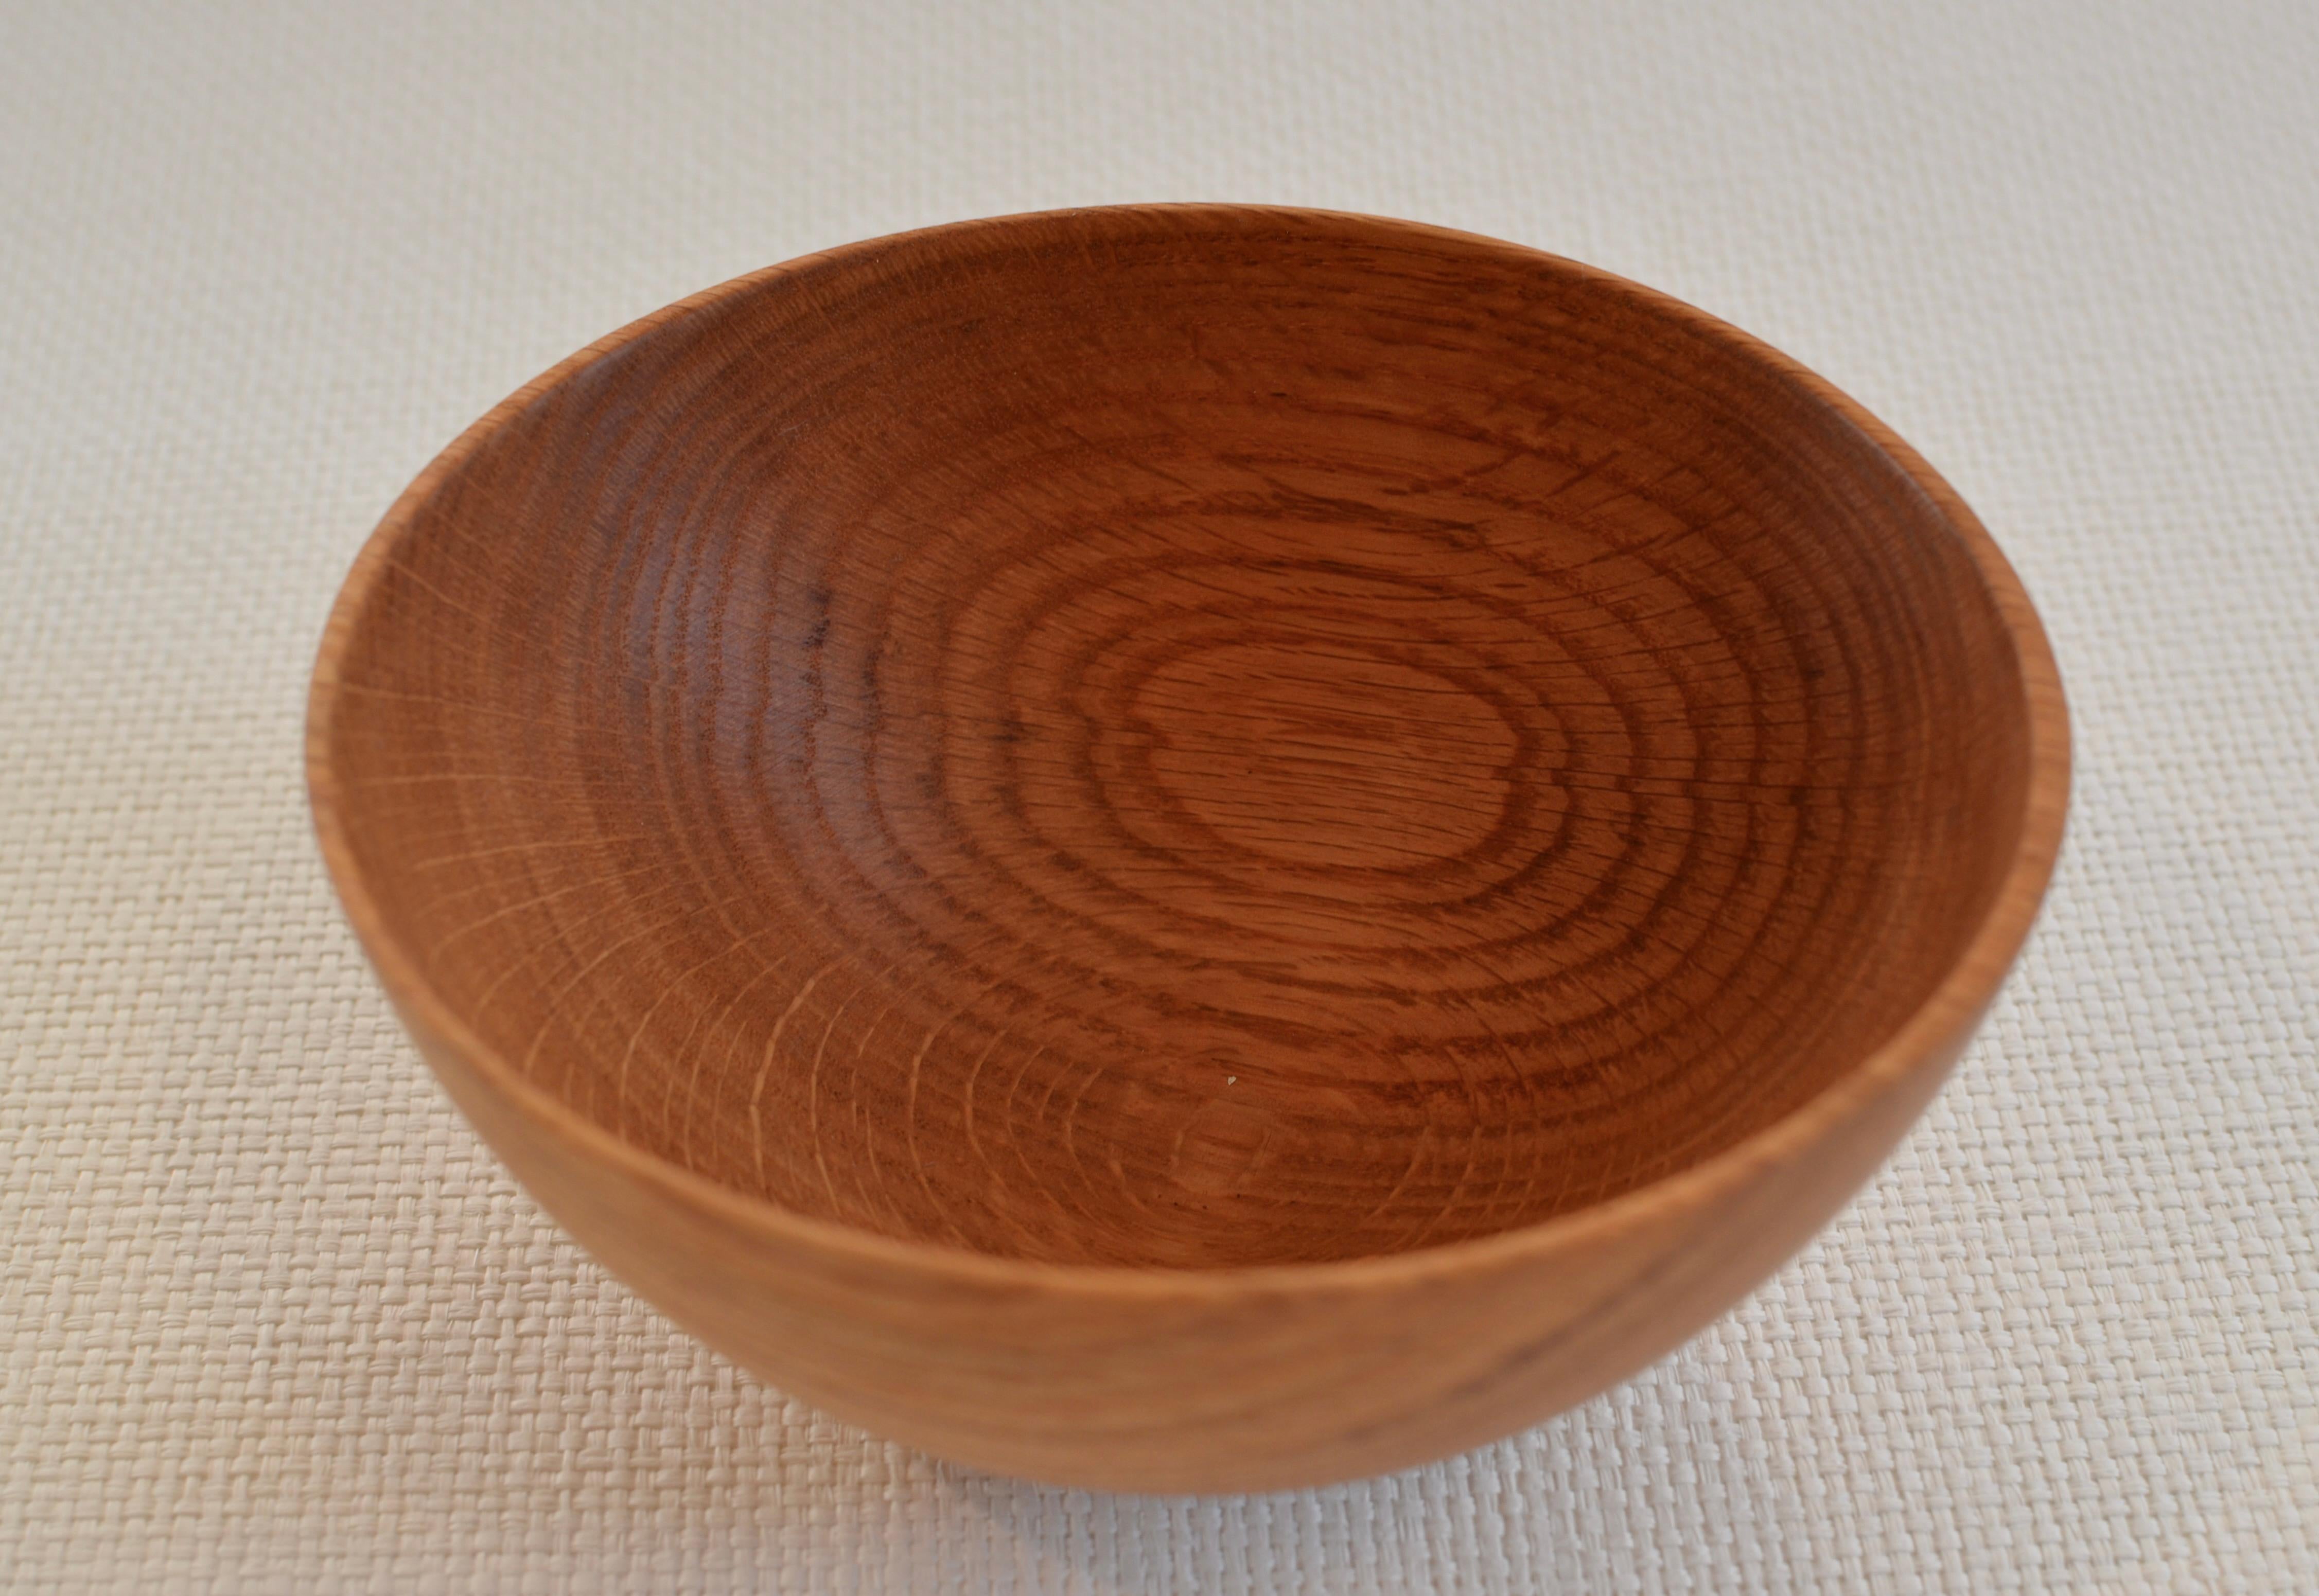 Handgeschnitzte Schale aus Roteichenholz mit natürlicher Maserung. Für die Herstellung wurde nur Holz von gefallenen Eichen verwendet. Ein Unikat.